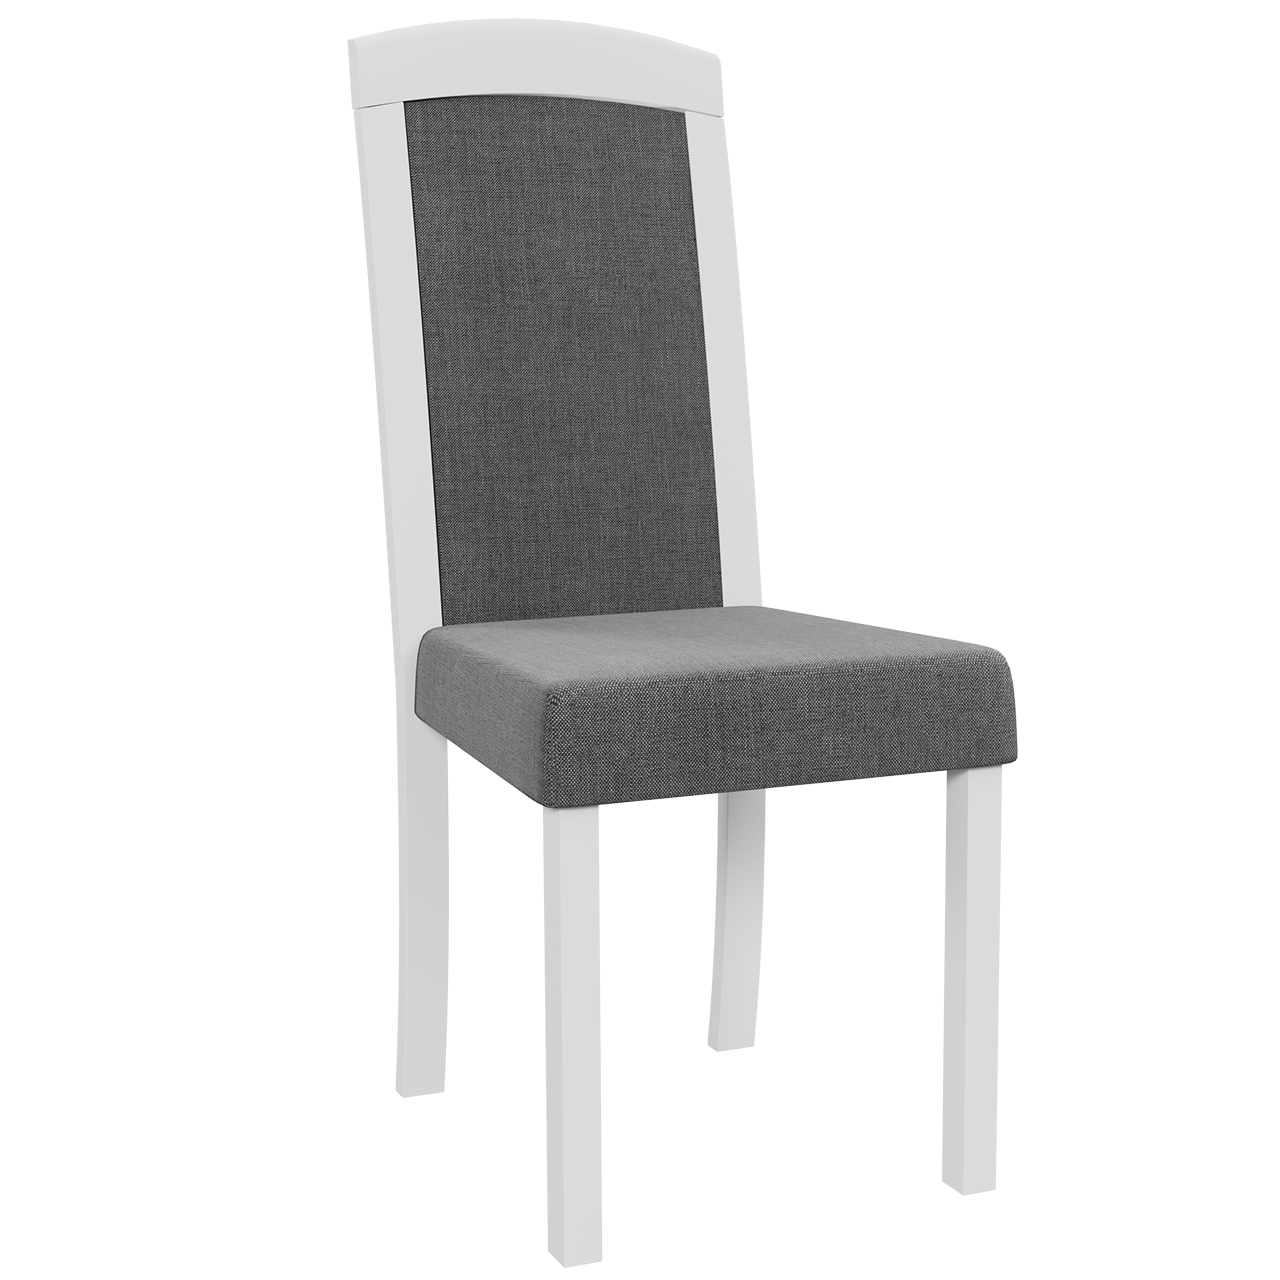 Chair ROMA 7 white / 7B